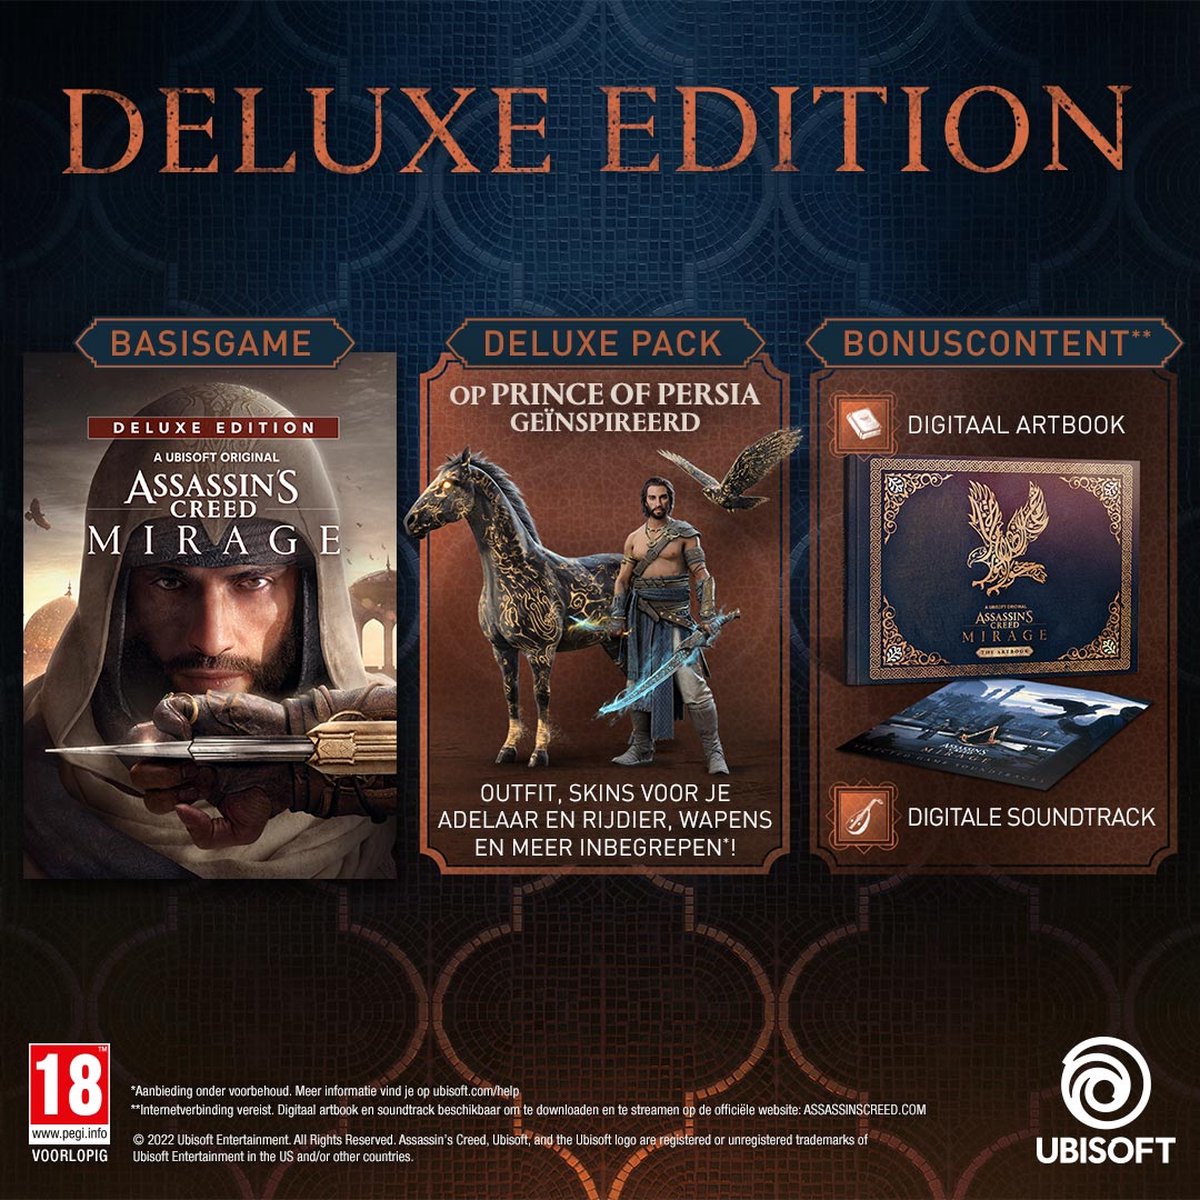 Natuurlijk! Hier is een herschreven versie van de titel in het Engels:

**"Assassin's Creed Mirage Deluxe Edition - Ultimate Gaming Experience for Xbox One & Series X"**

Deze titel benadrukt de exclusiviteit van de Deluxe Edition en de optimale spelervaring op beide Xbox-platformen.